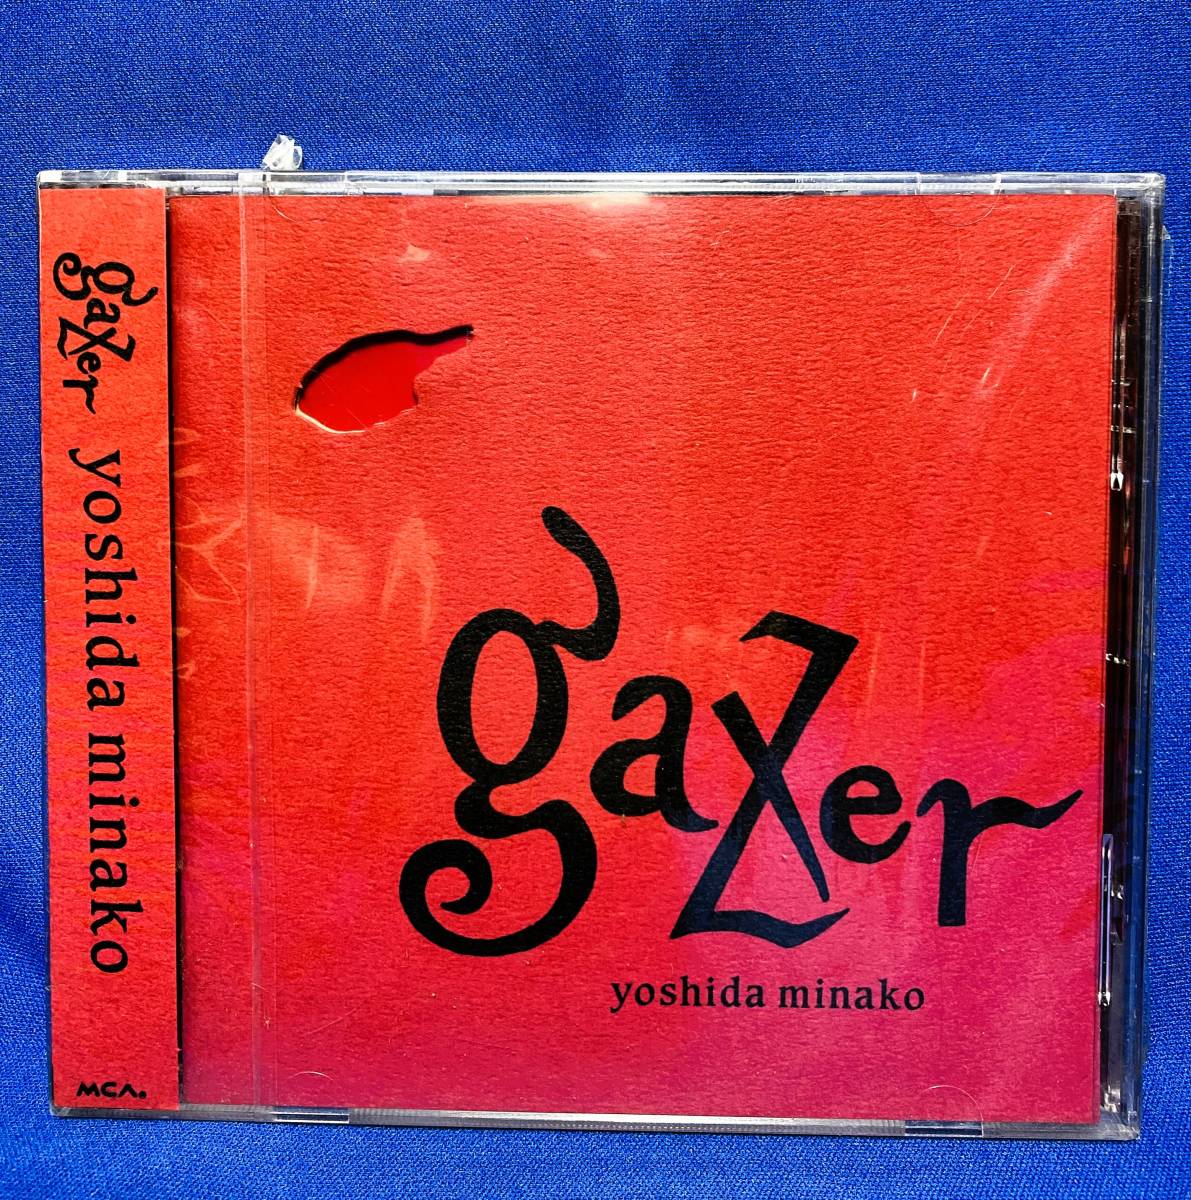 吉田美奈子 yoshida minako / gazer / sample 見本 未開封CD / MVCD-30_画像1